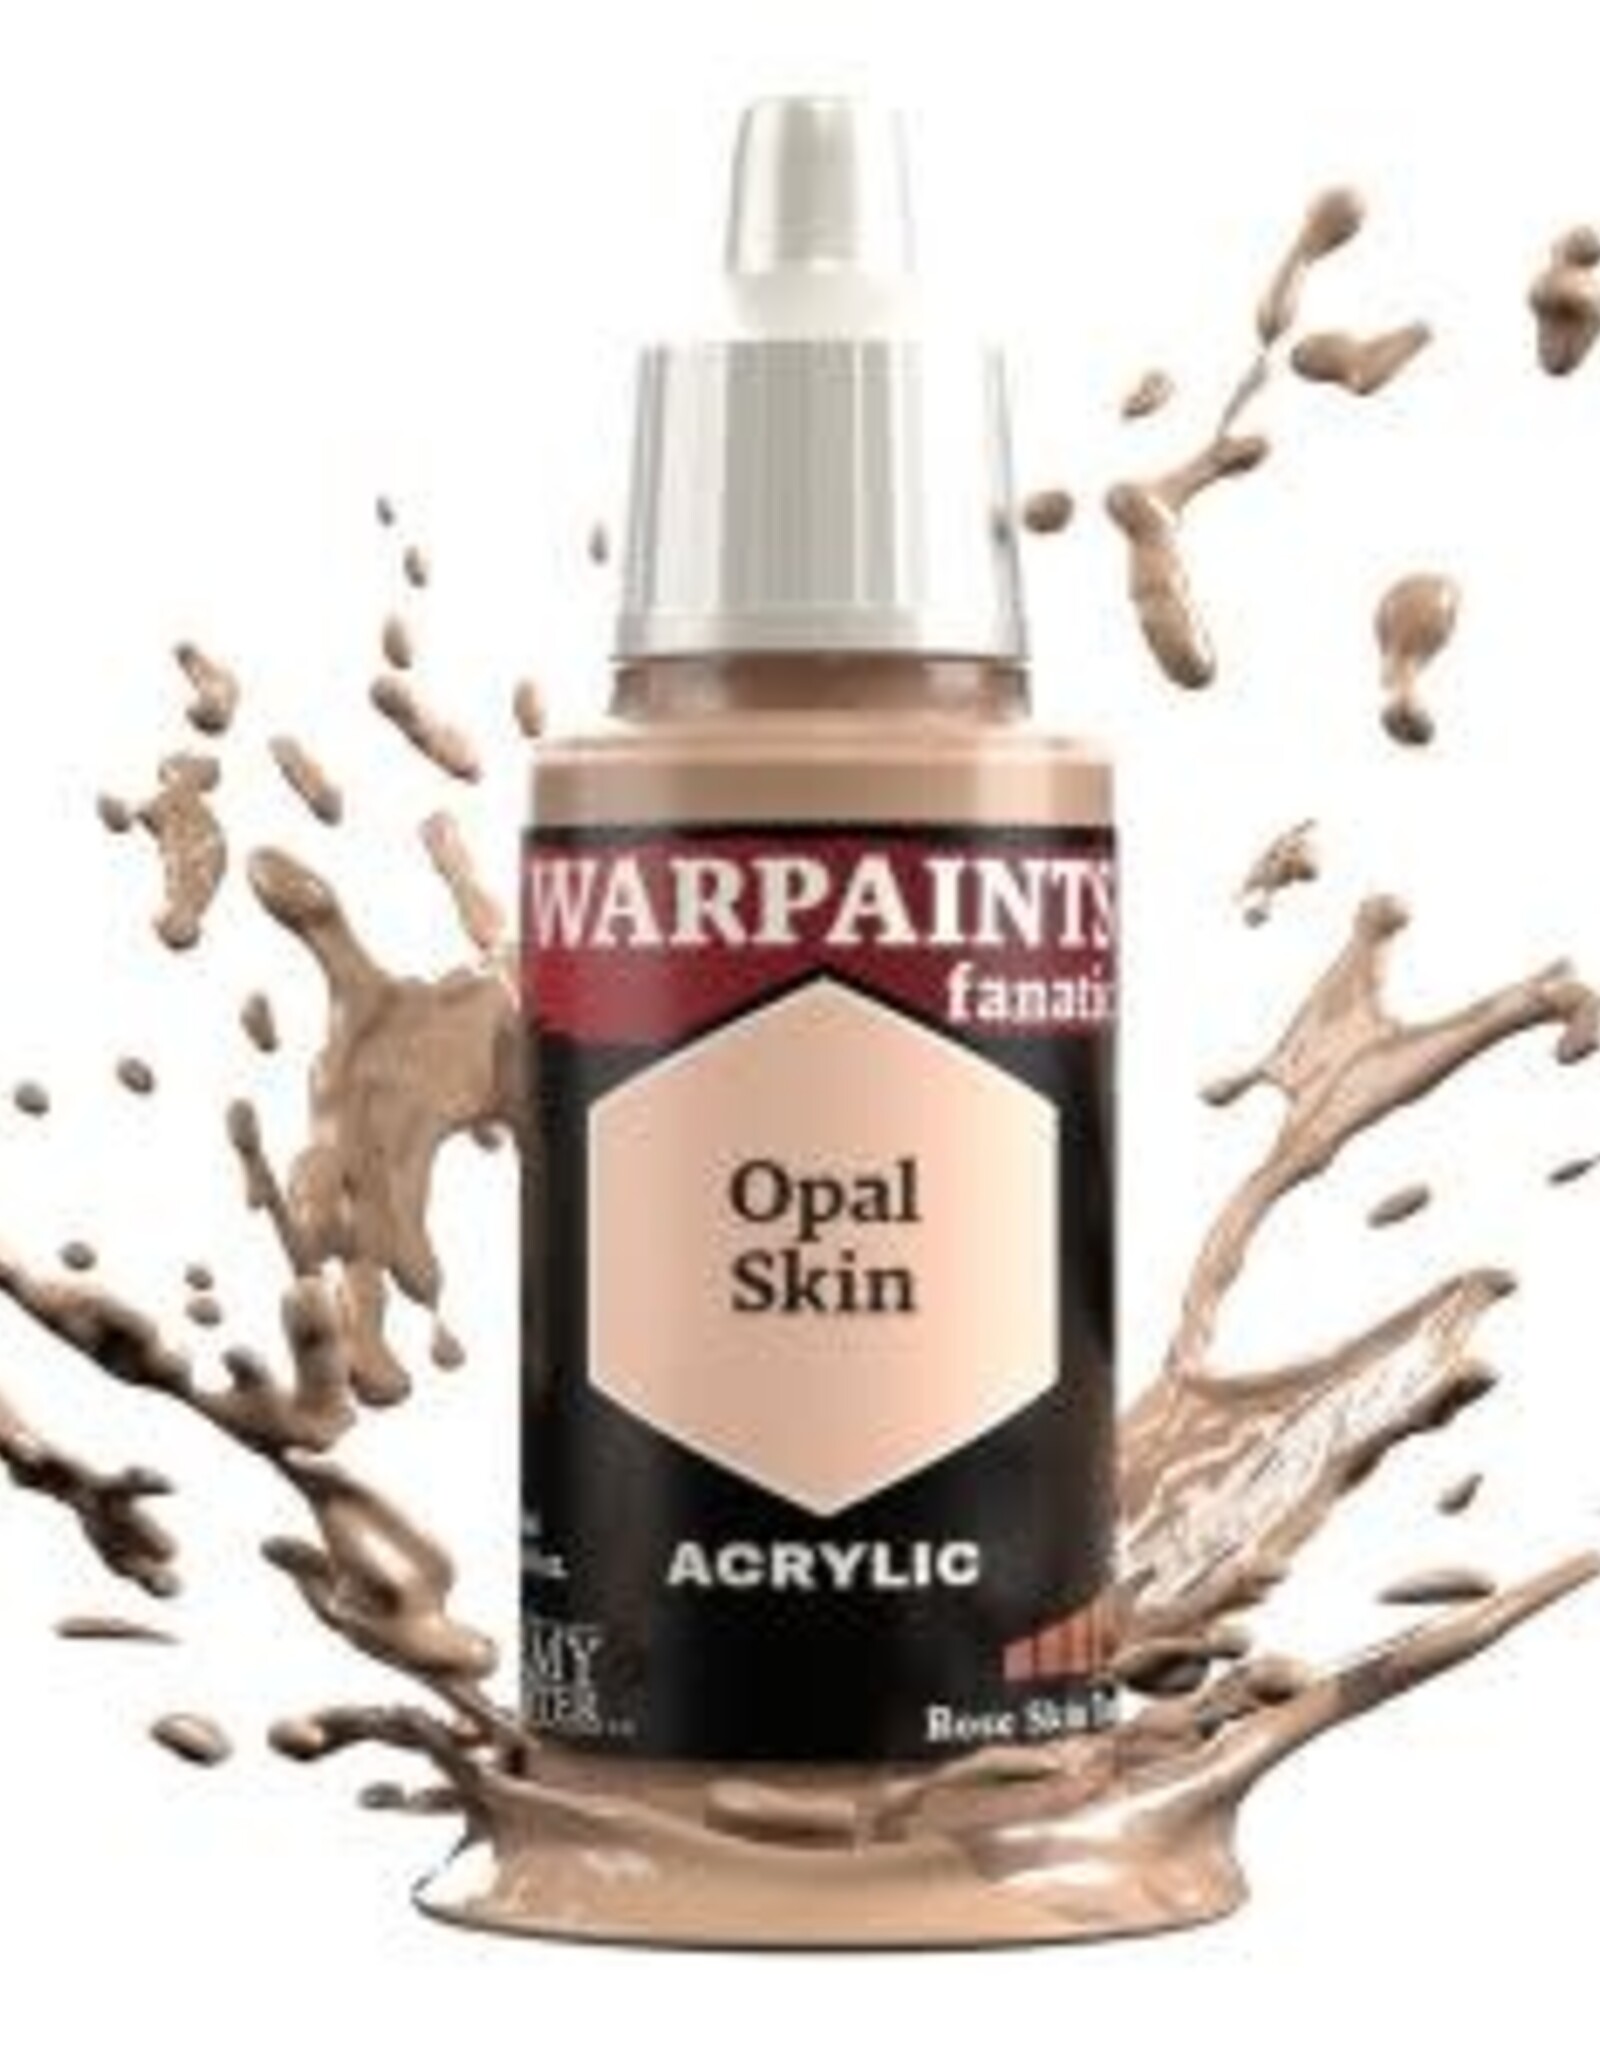 Warpaints Fanatic: Opal Skin